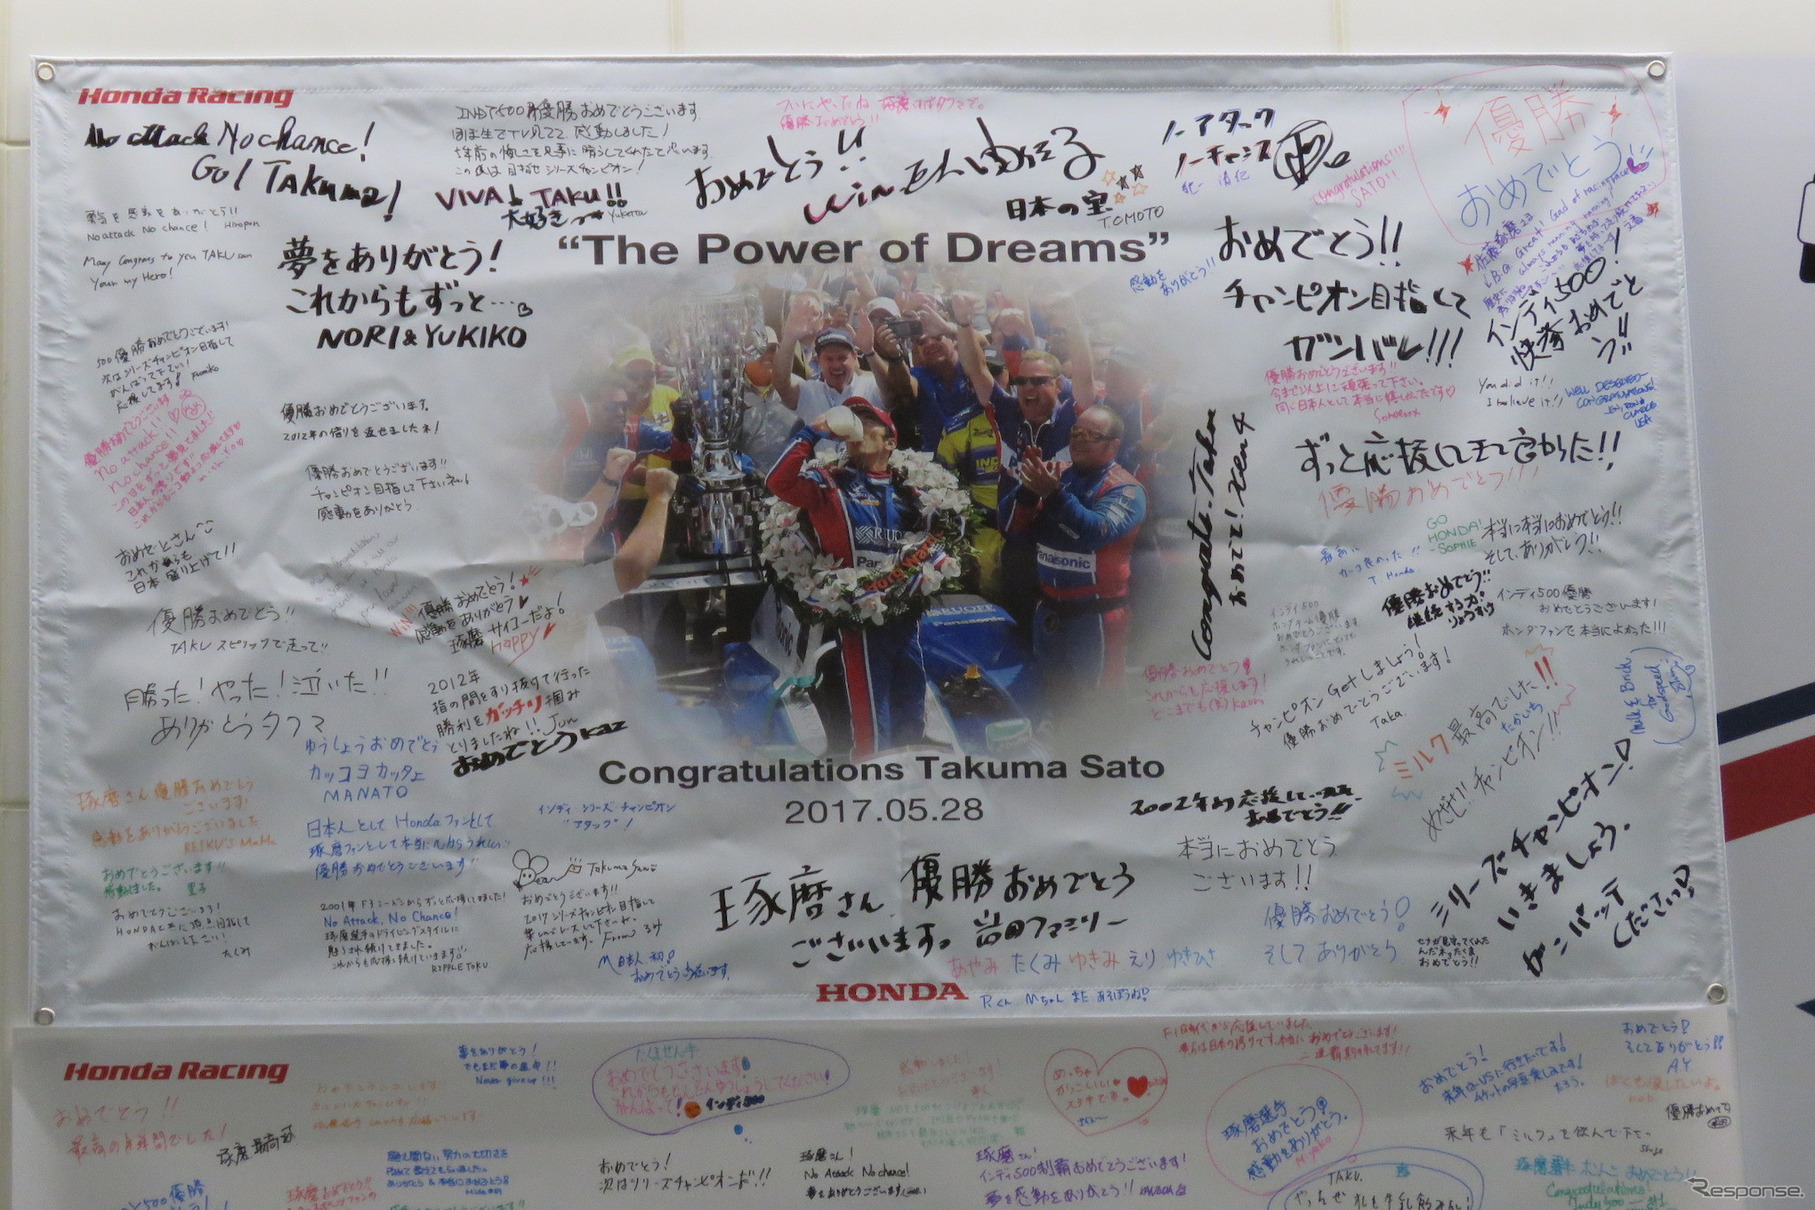 東京・青山のホンダ本社1F「ウエルカムプラザ」では23日まで佐藤琢磨の記念展示を実施中。